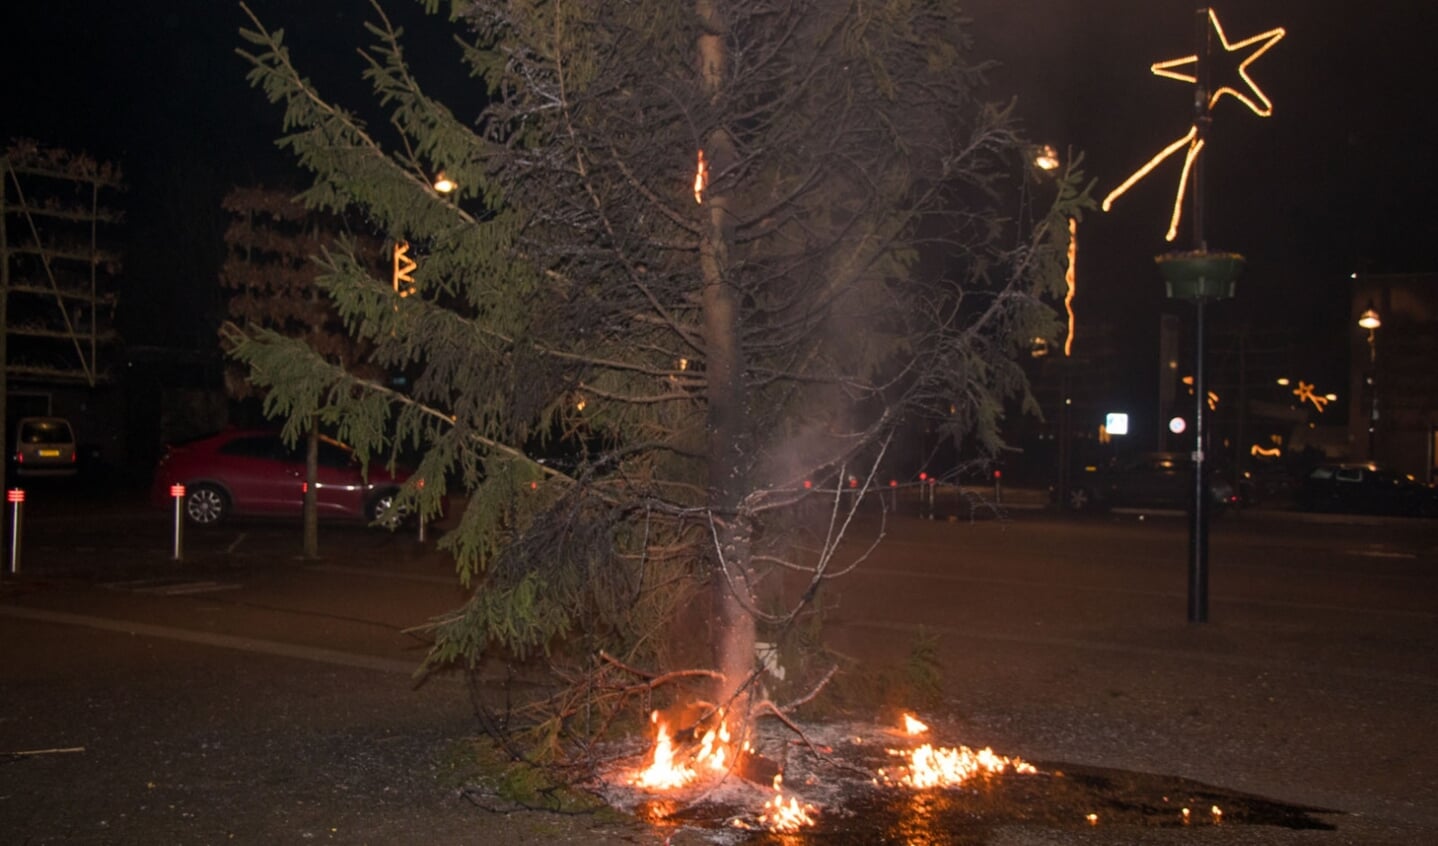 • De kerstboom op het marktplein werd in brand gestoken.